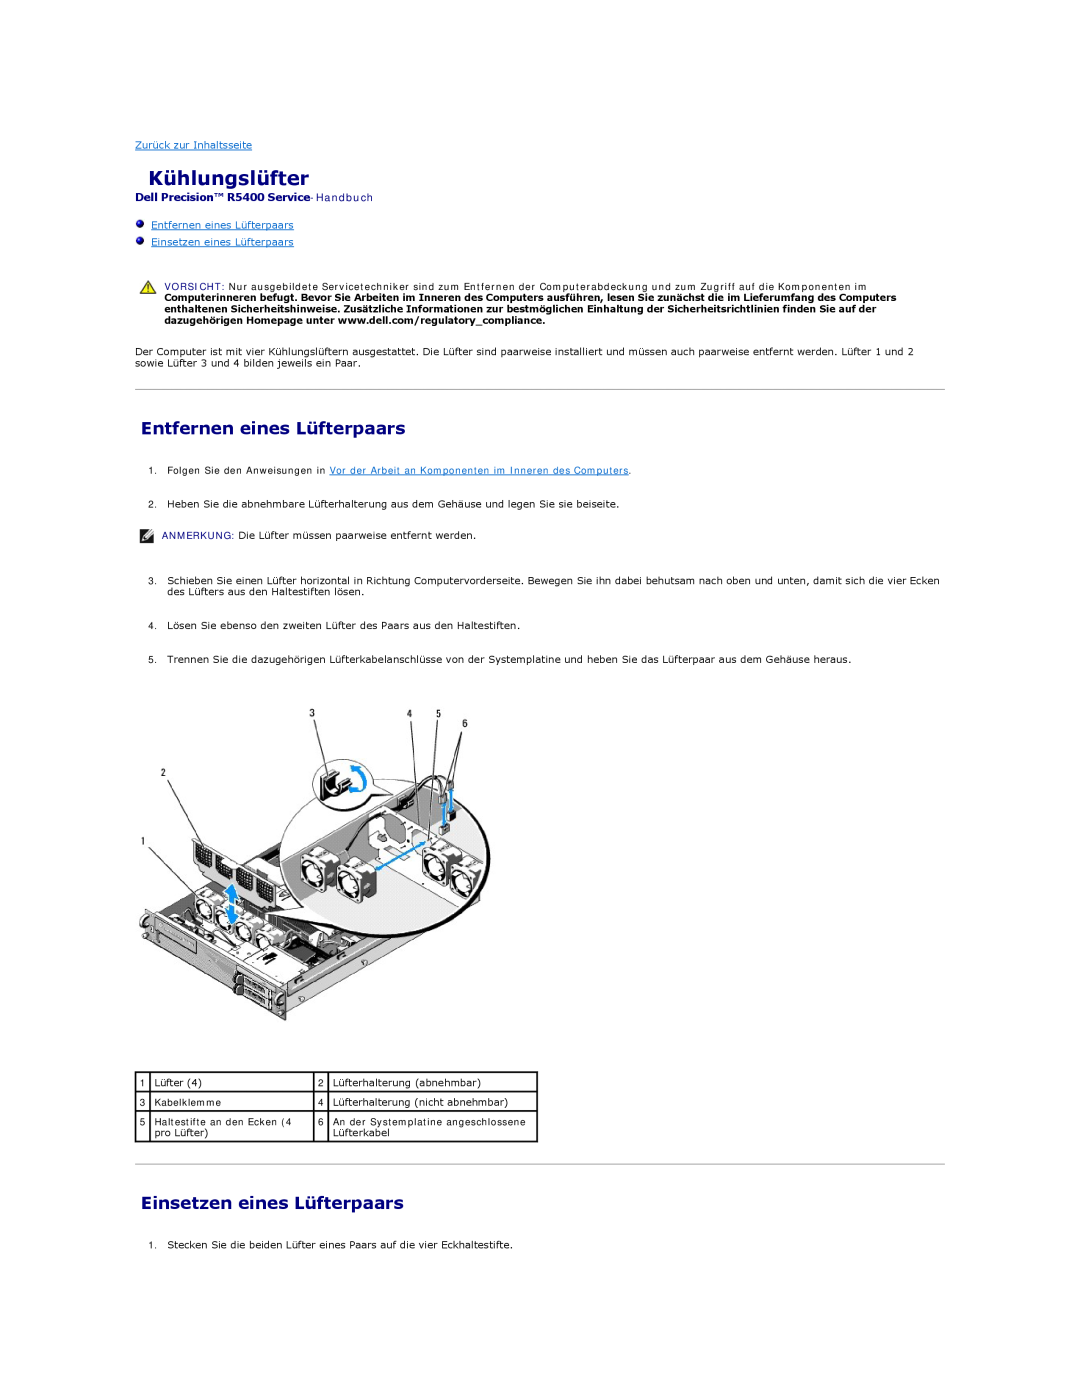 Dell Kühlungslüfter, Entfernen eines Lüfterpaars, Einsetzen eines Lüfterpaars, Dell Precision R5400 Service-Handbuch 